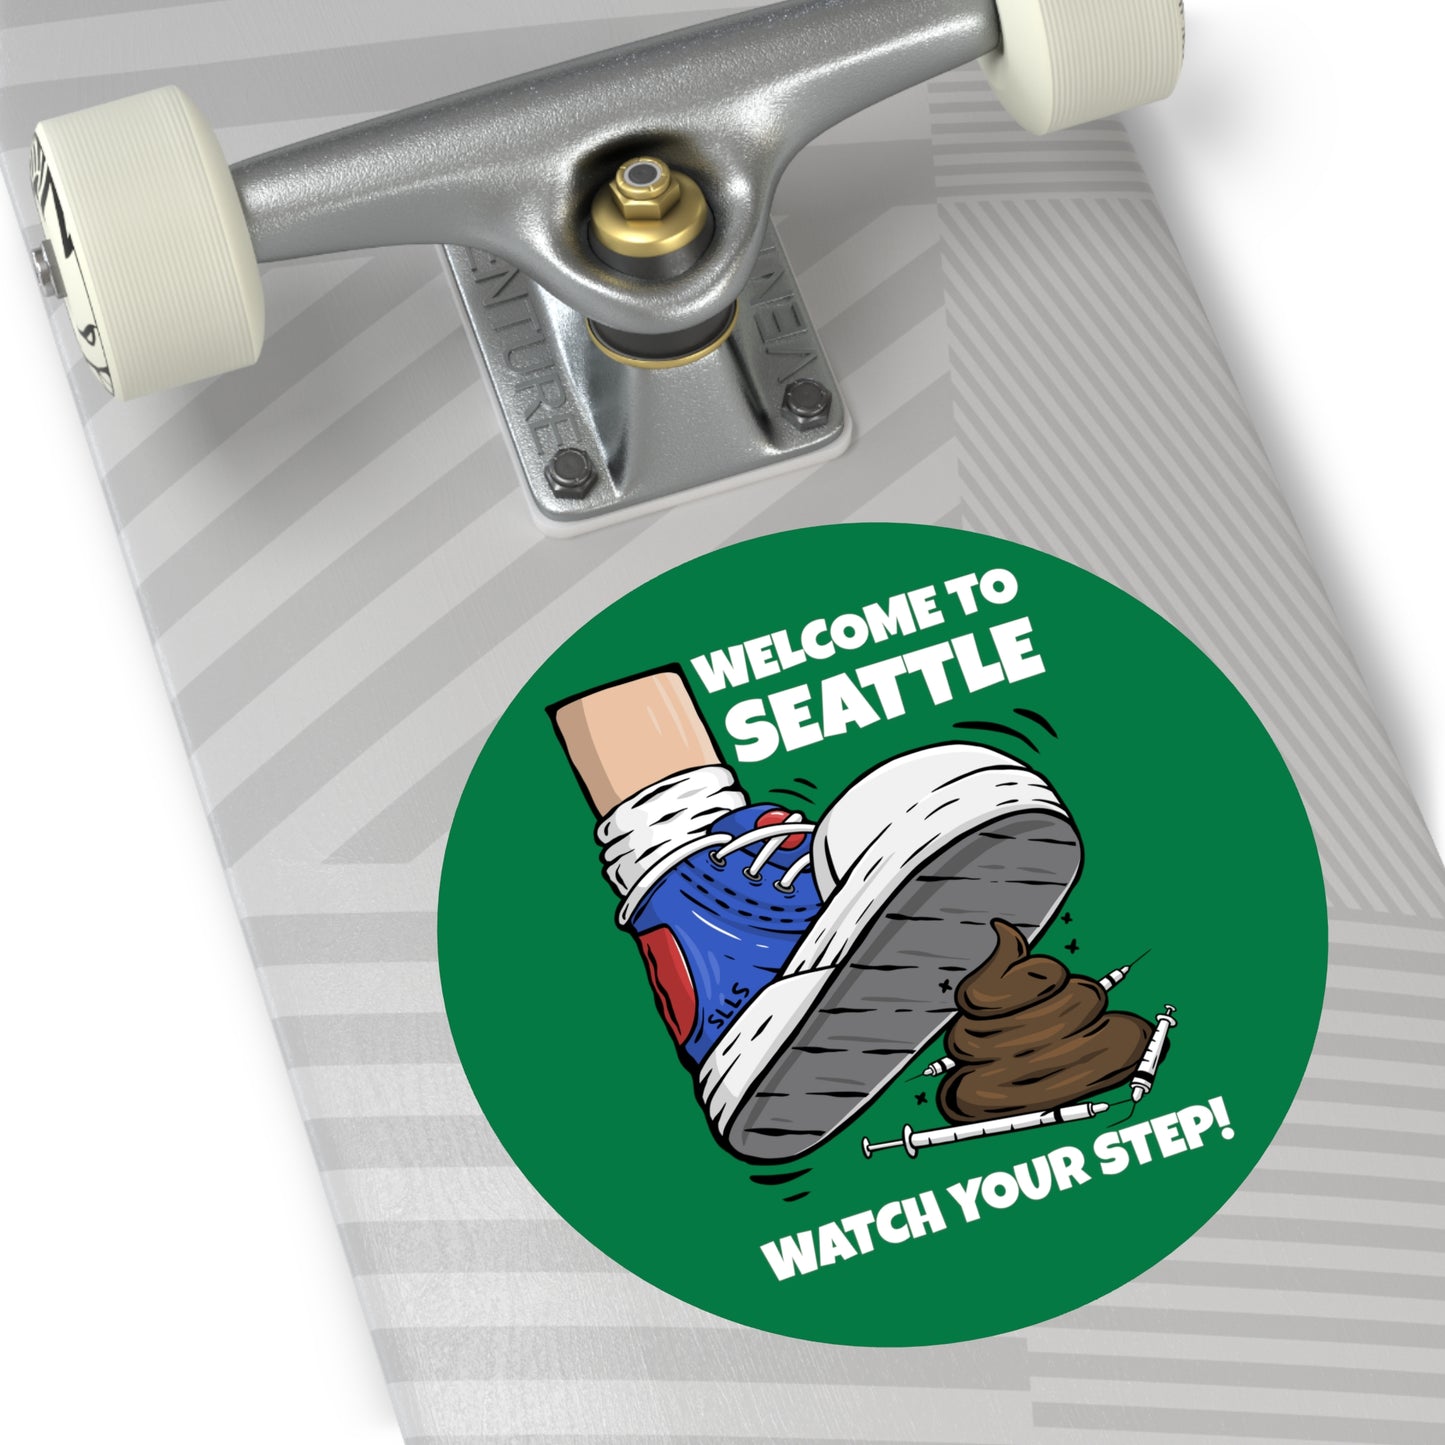 Welcome to Seattle | Green Round Vinyl Sticker